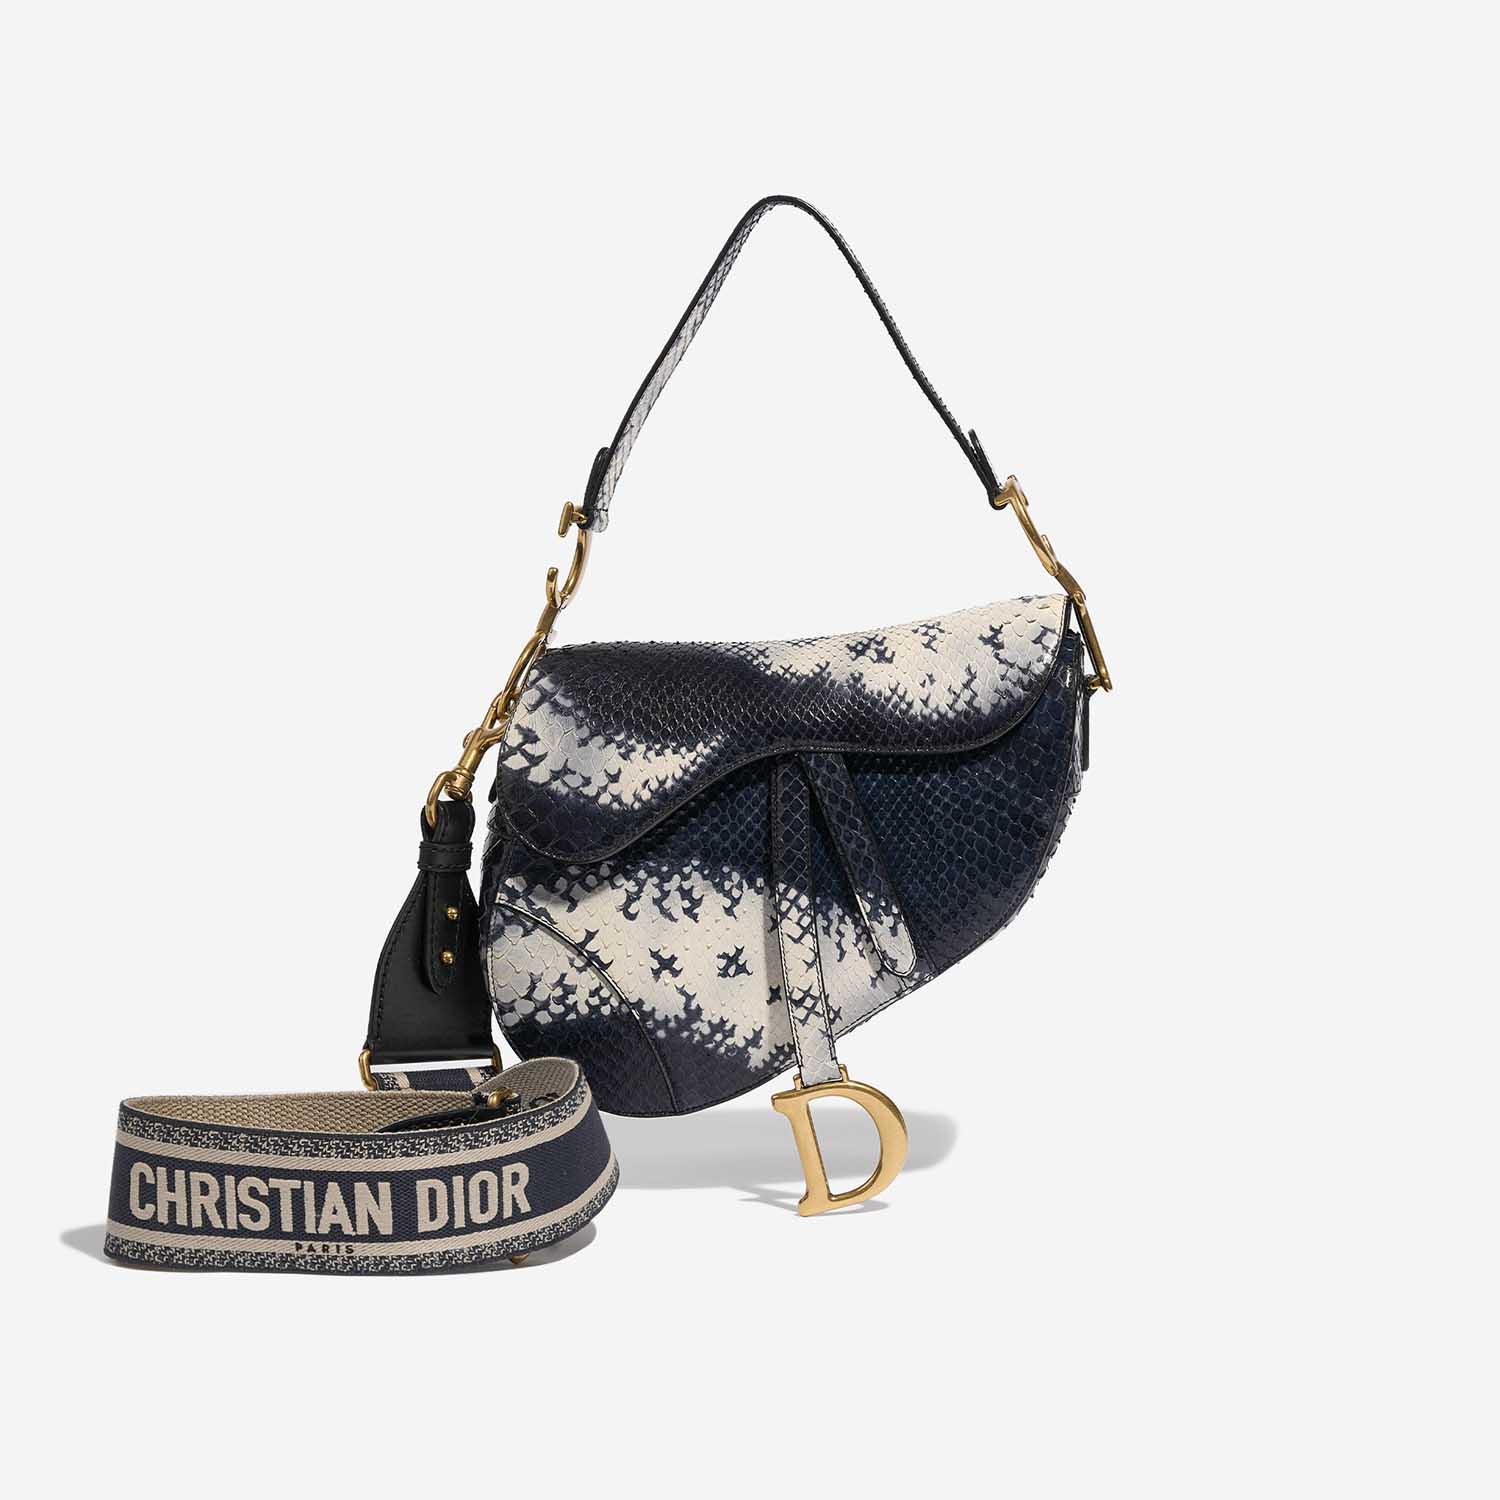 Pre-owned Dior Tasche Saddle Medium Python Blau / Weiß Blau, Weiß Detail | Verkaufen Sie Ihre Designer-Tasche auf Saclab.com